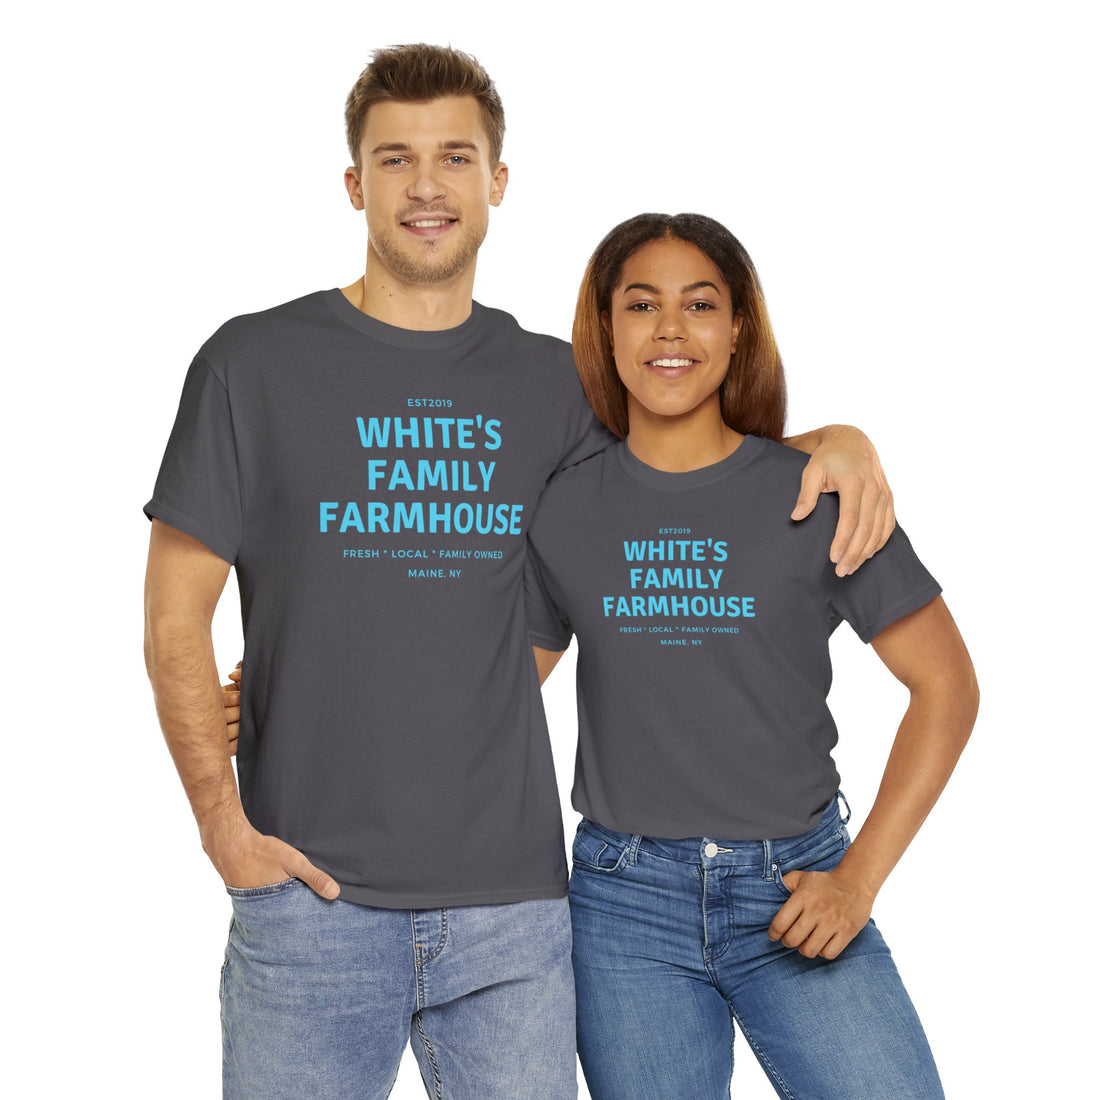 White's Family Farmhouse Tee - White's Family Farmhouse 